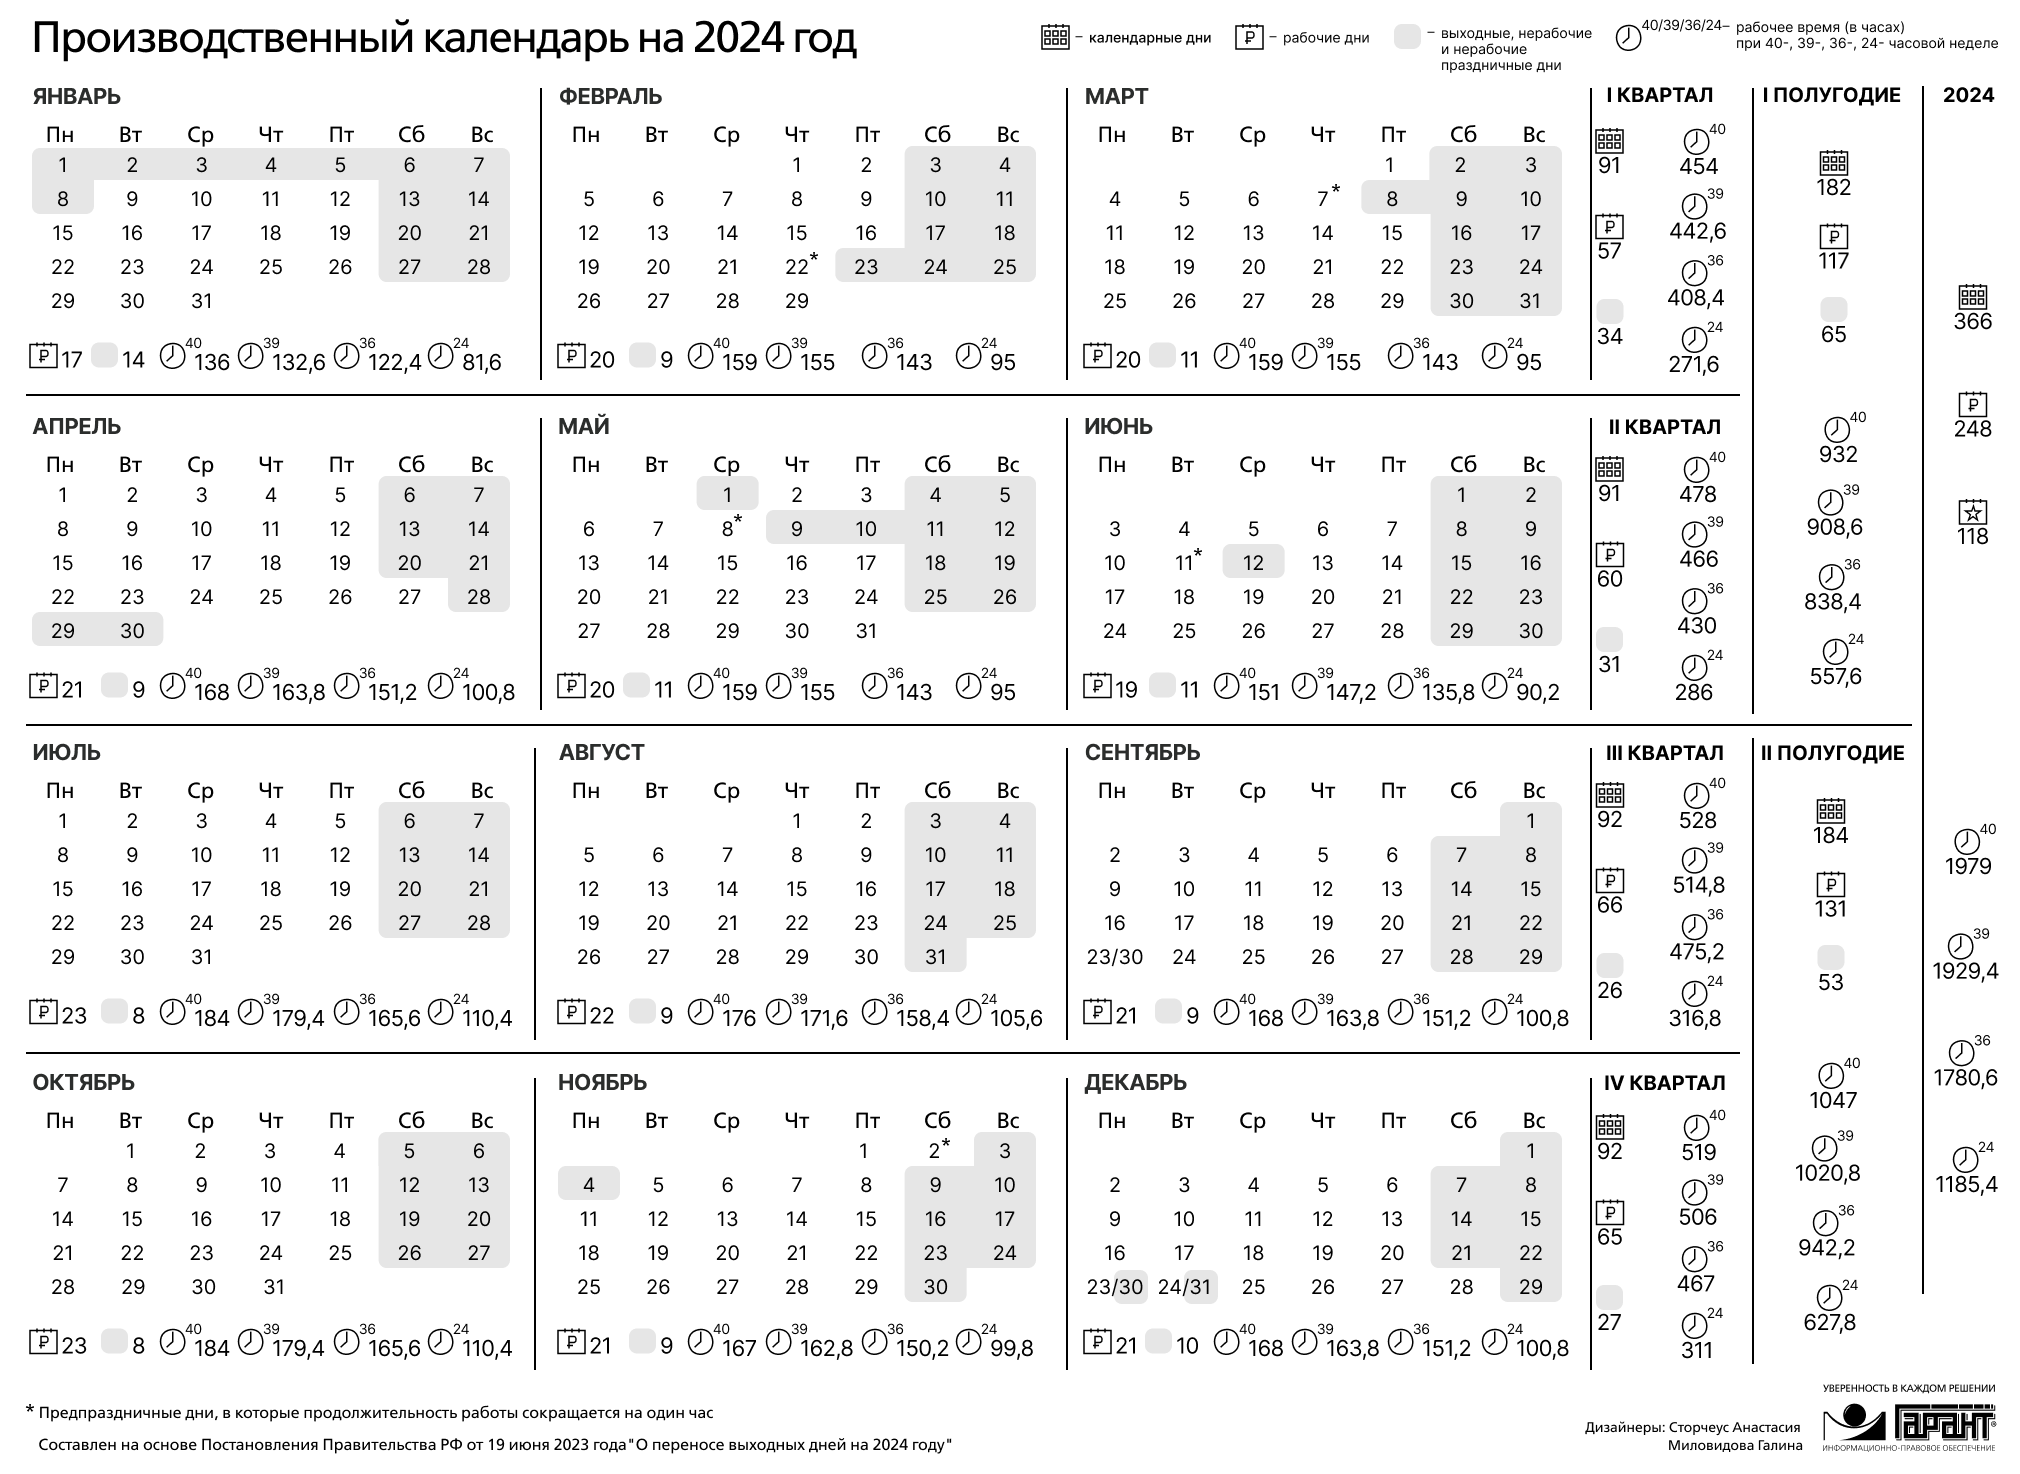 Праздничные выходные в июне 2024 года. Праздничные дни 2024 года в России производственный календарь. Календарь на 2024 год с праздниками и выходными производственный РФ. Производственный календарь на 2024 го од. Зводственный календарь на 2024.